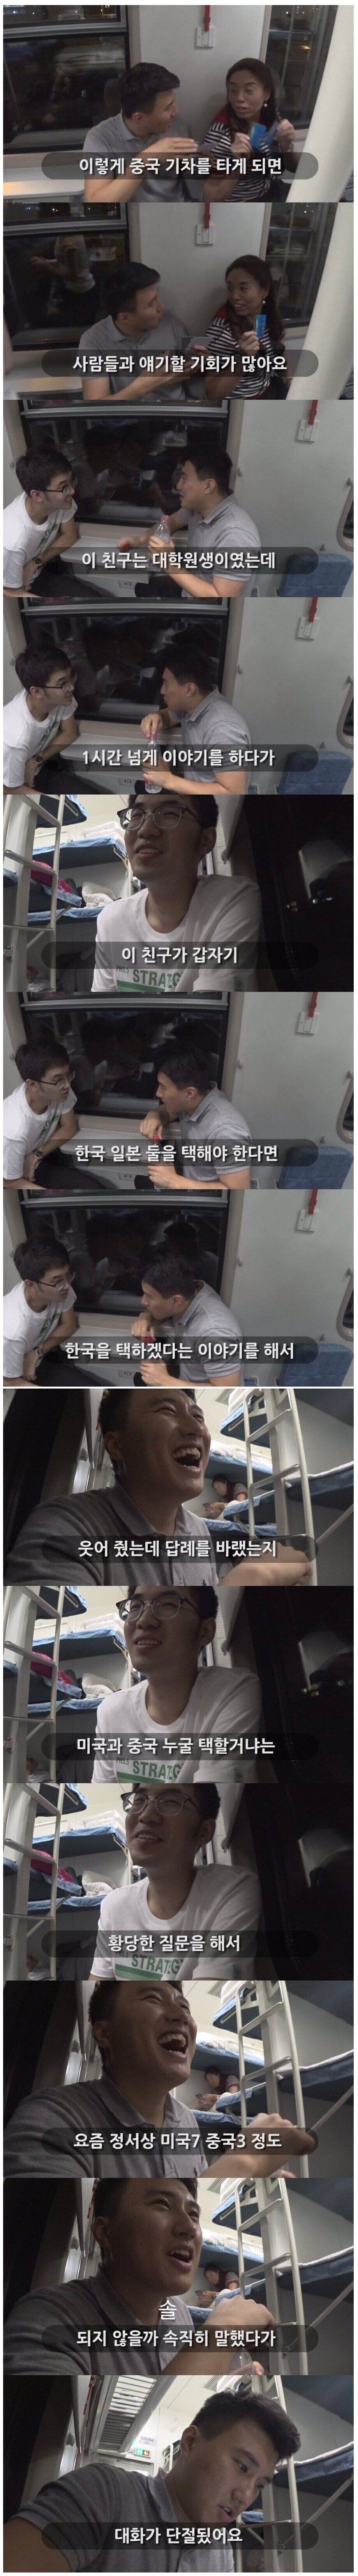 기차에서 중국인과 대화를 나누게 된 한국인.jpg